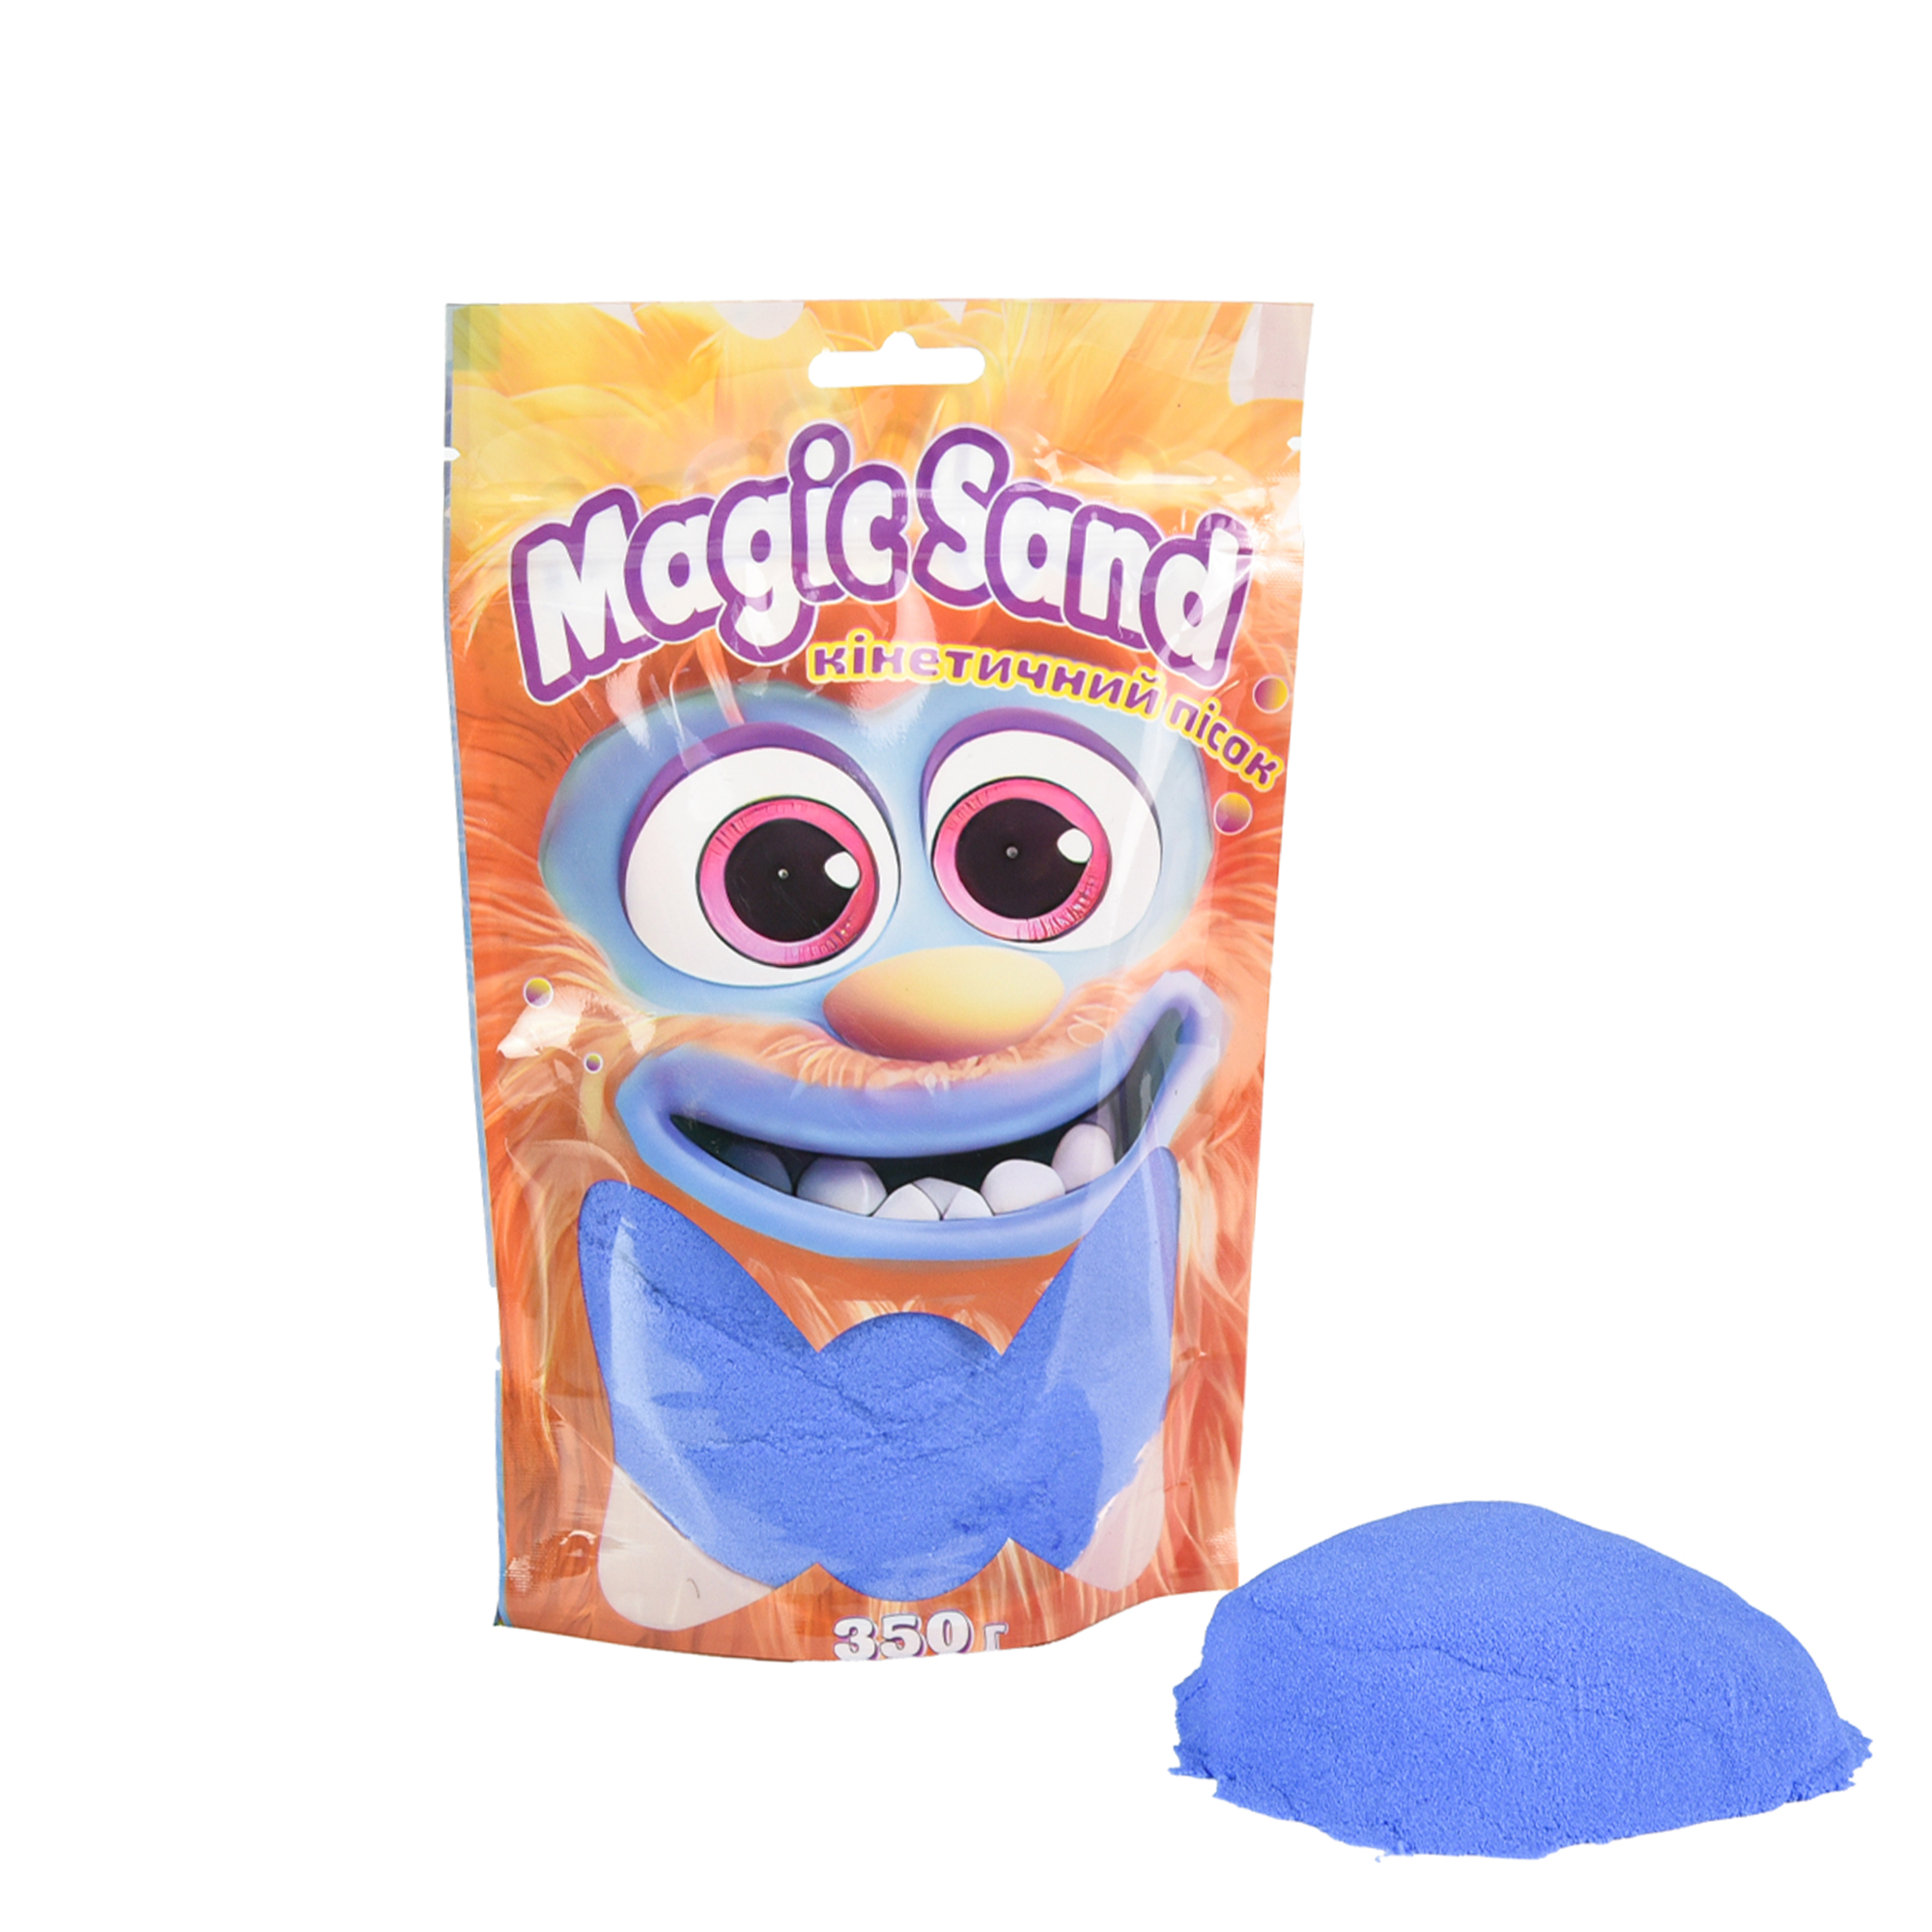 Kinetischer Sand Strateg Magic Sand im Beutel 39402-9 blau, 0,350 kg